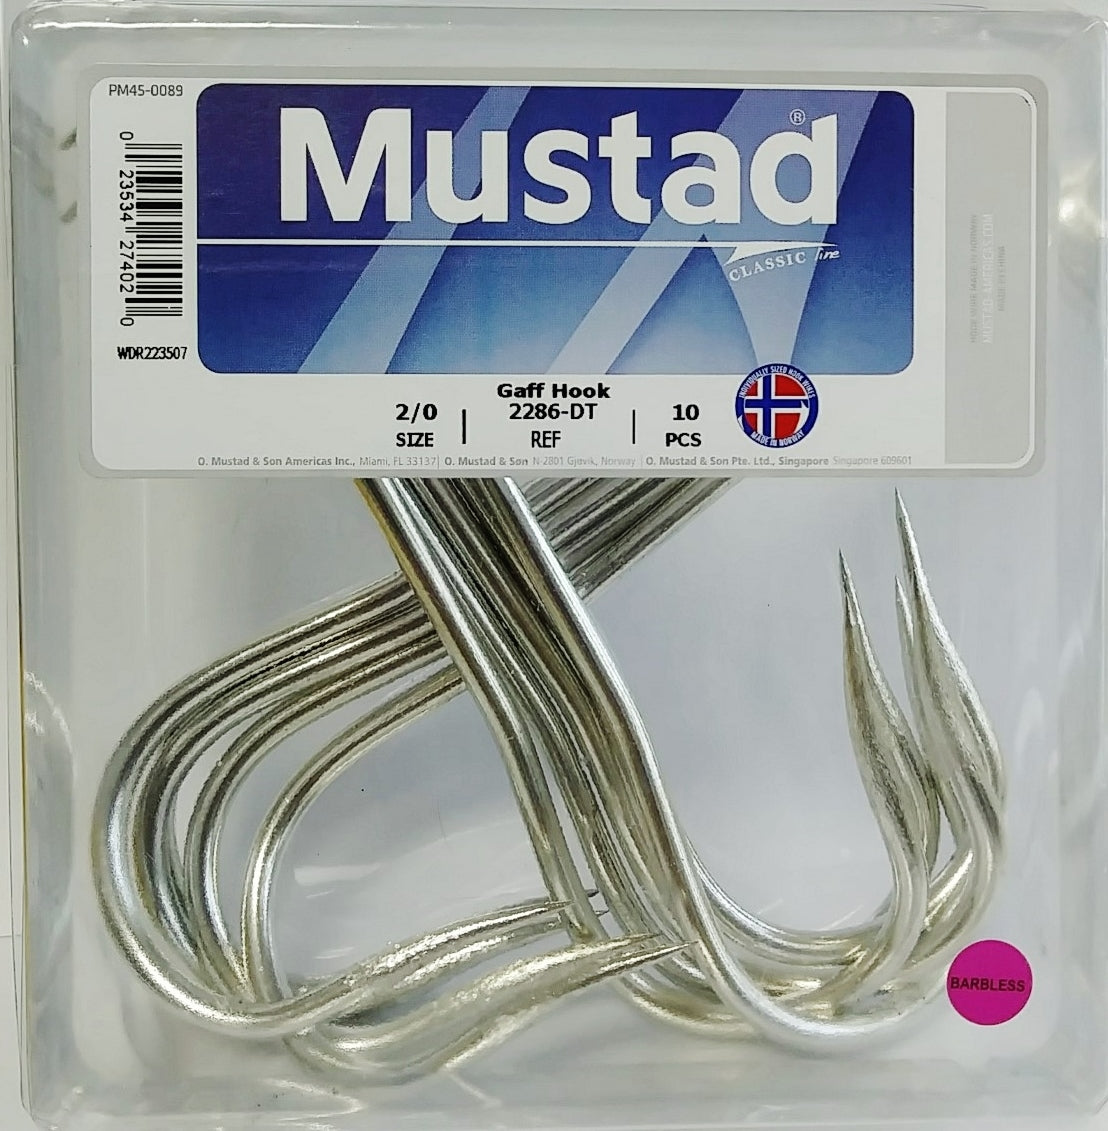 Mustad Gaff Hook - Size 4/0 - 2286 DT 